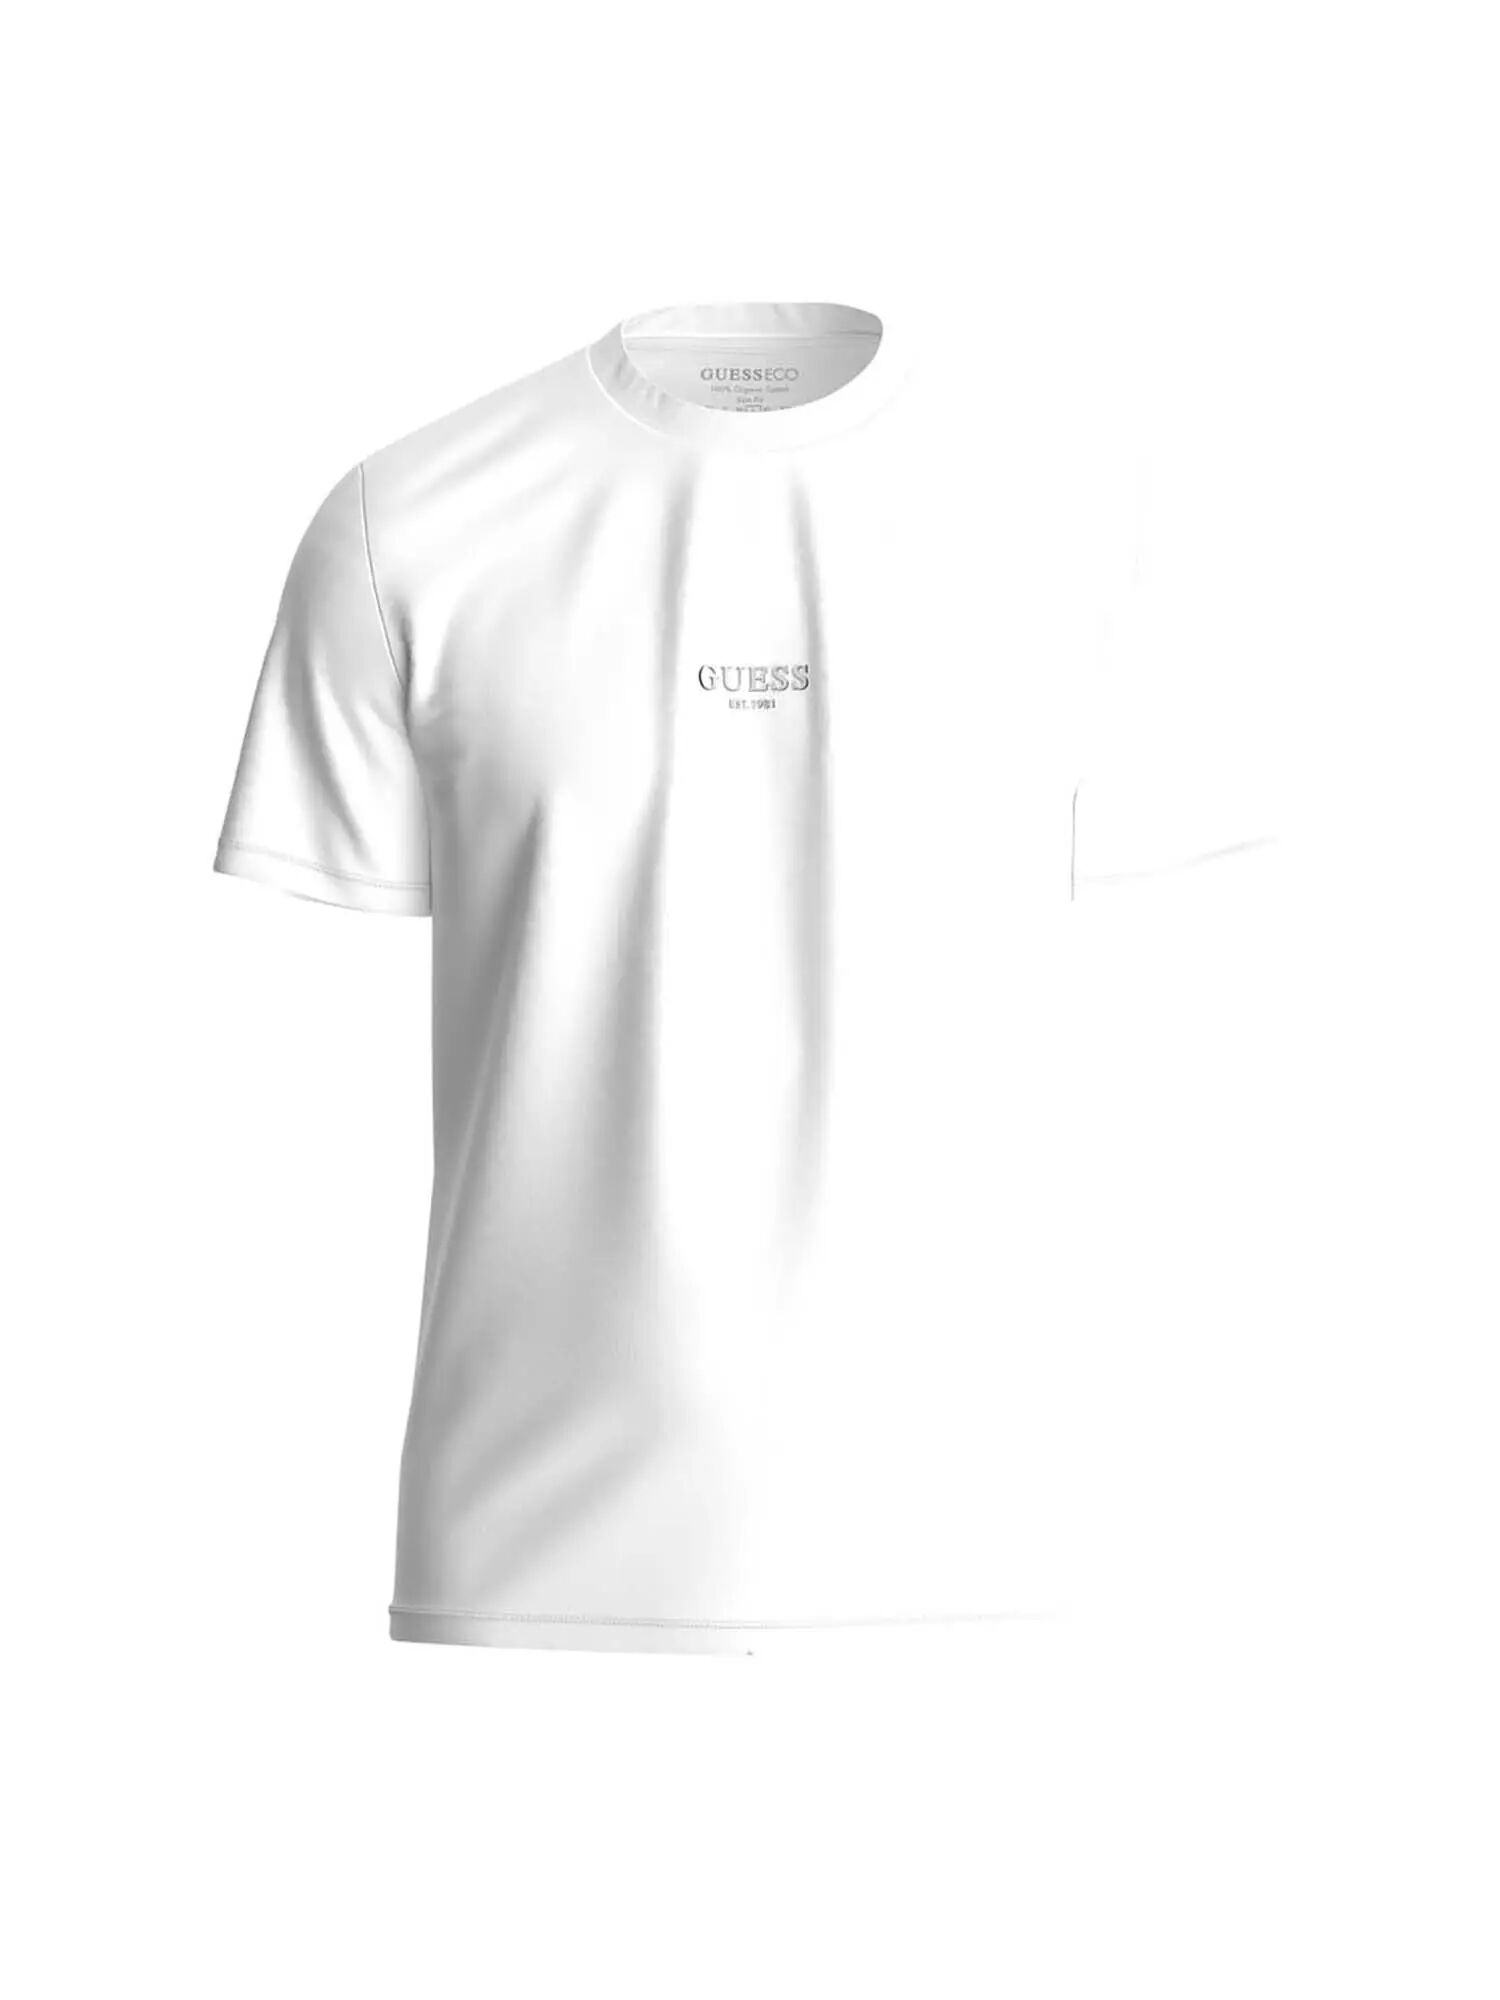 Guess T-shirt Uomo Colore Bianco BIANCO XS